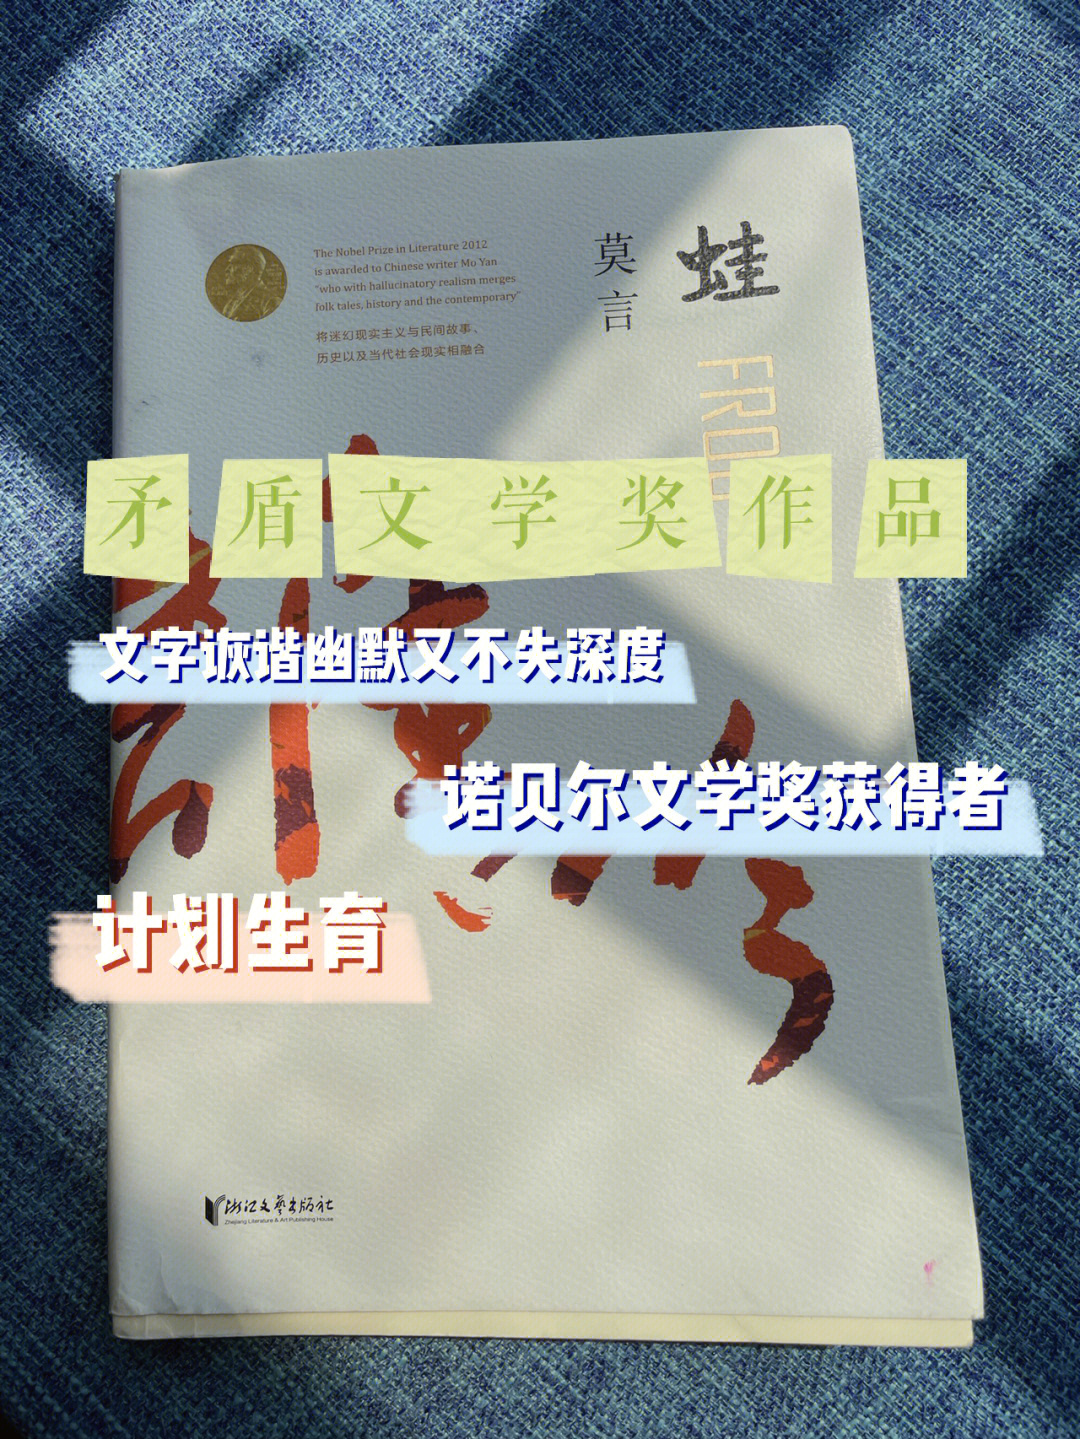 97作为中国第一位诺贝尔文学奖获得者,莫言的文字并不晦涩,反而更加